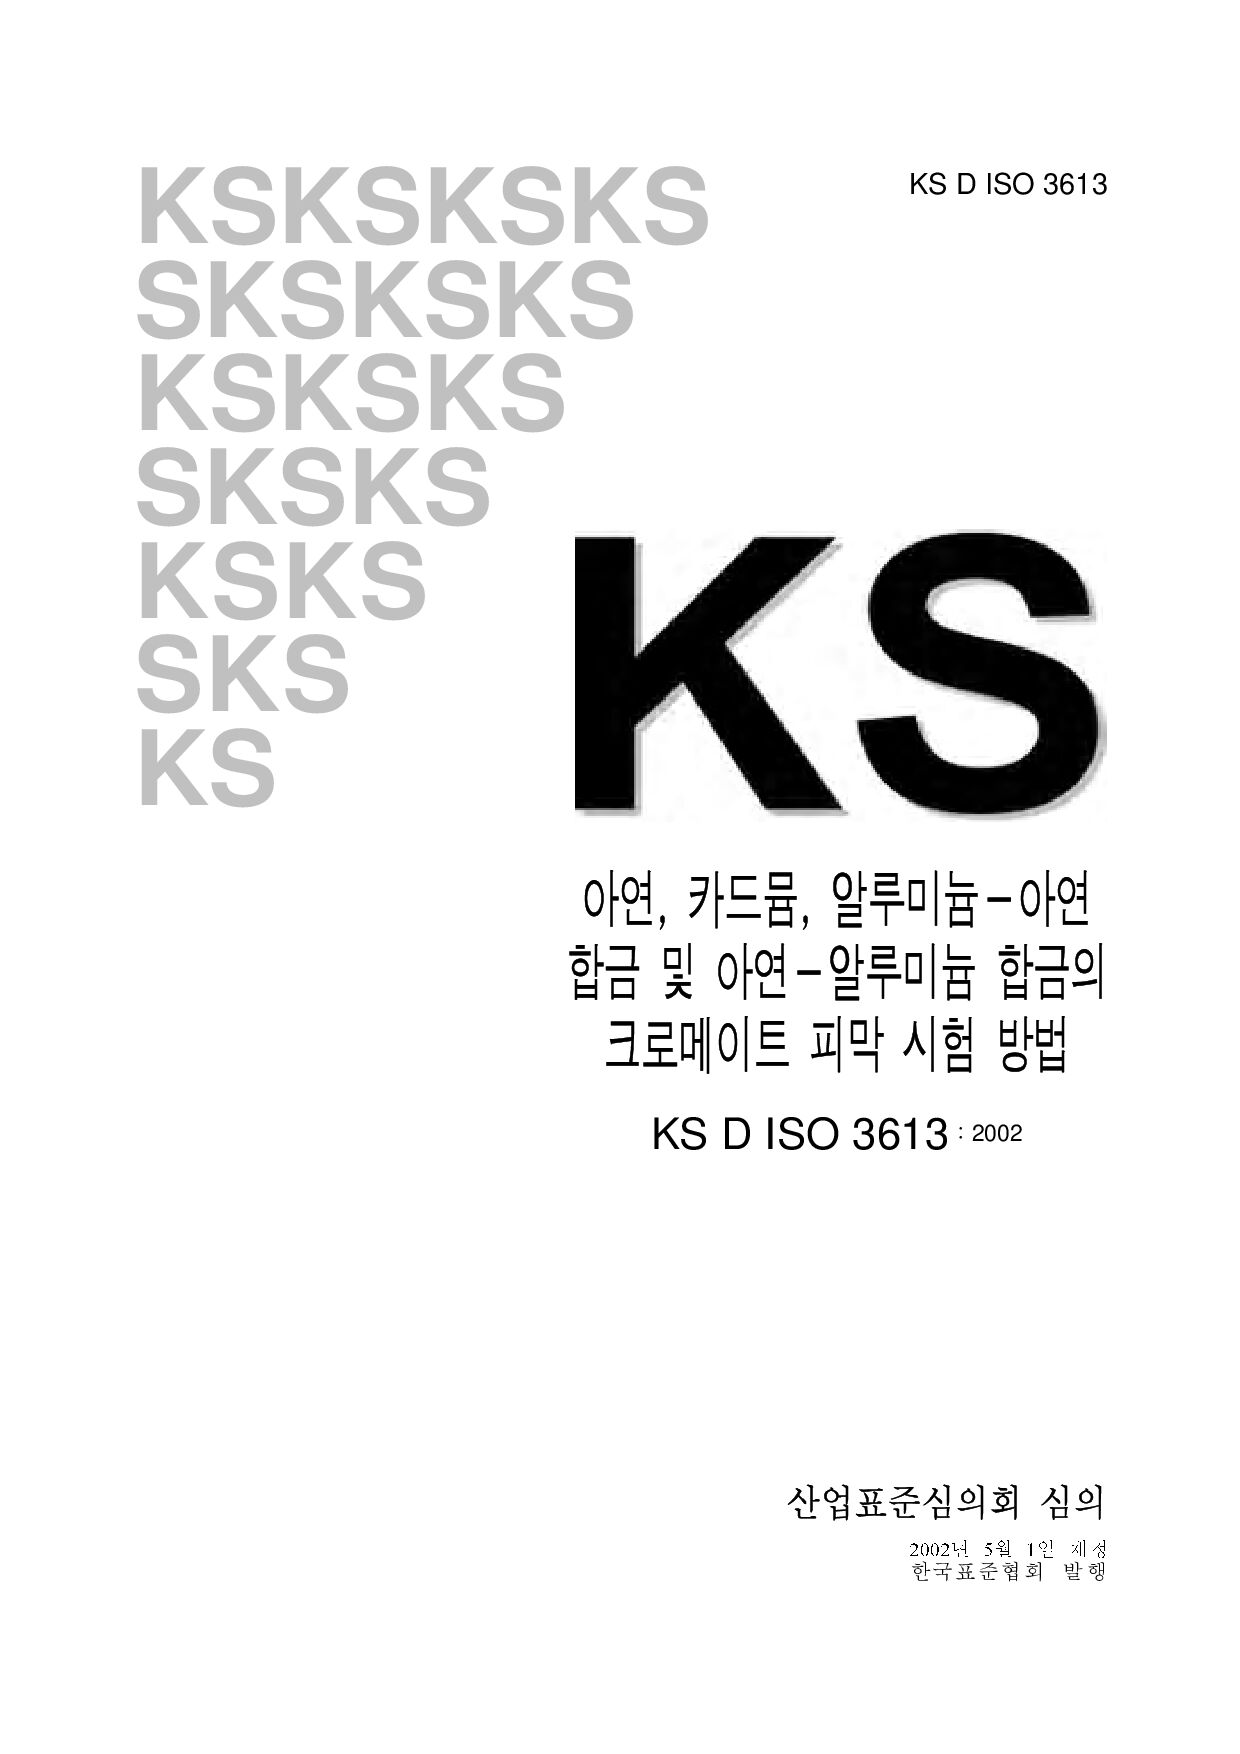 KS D ISO 3613:2002